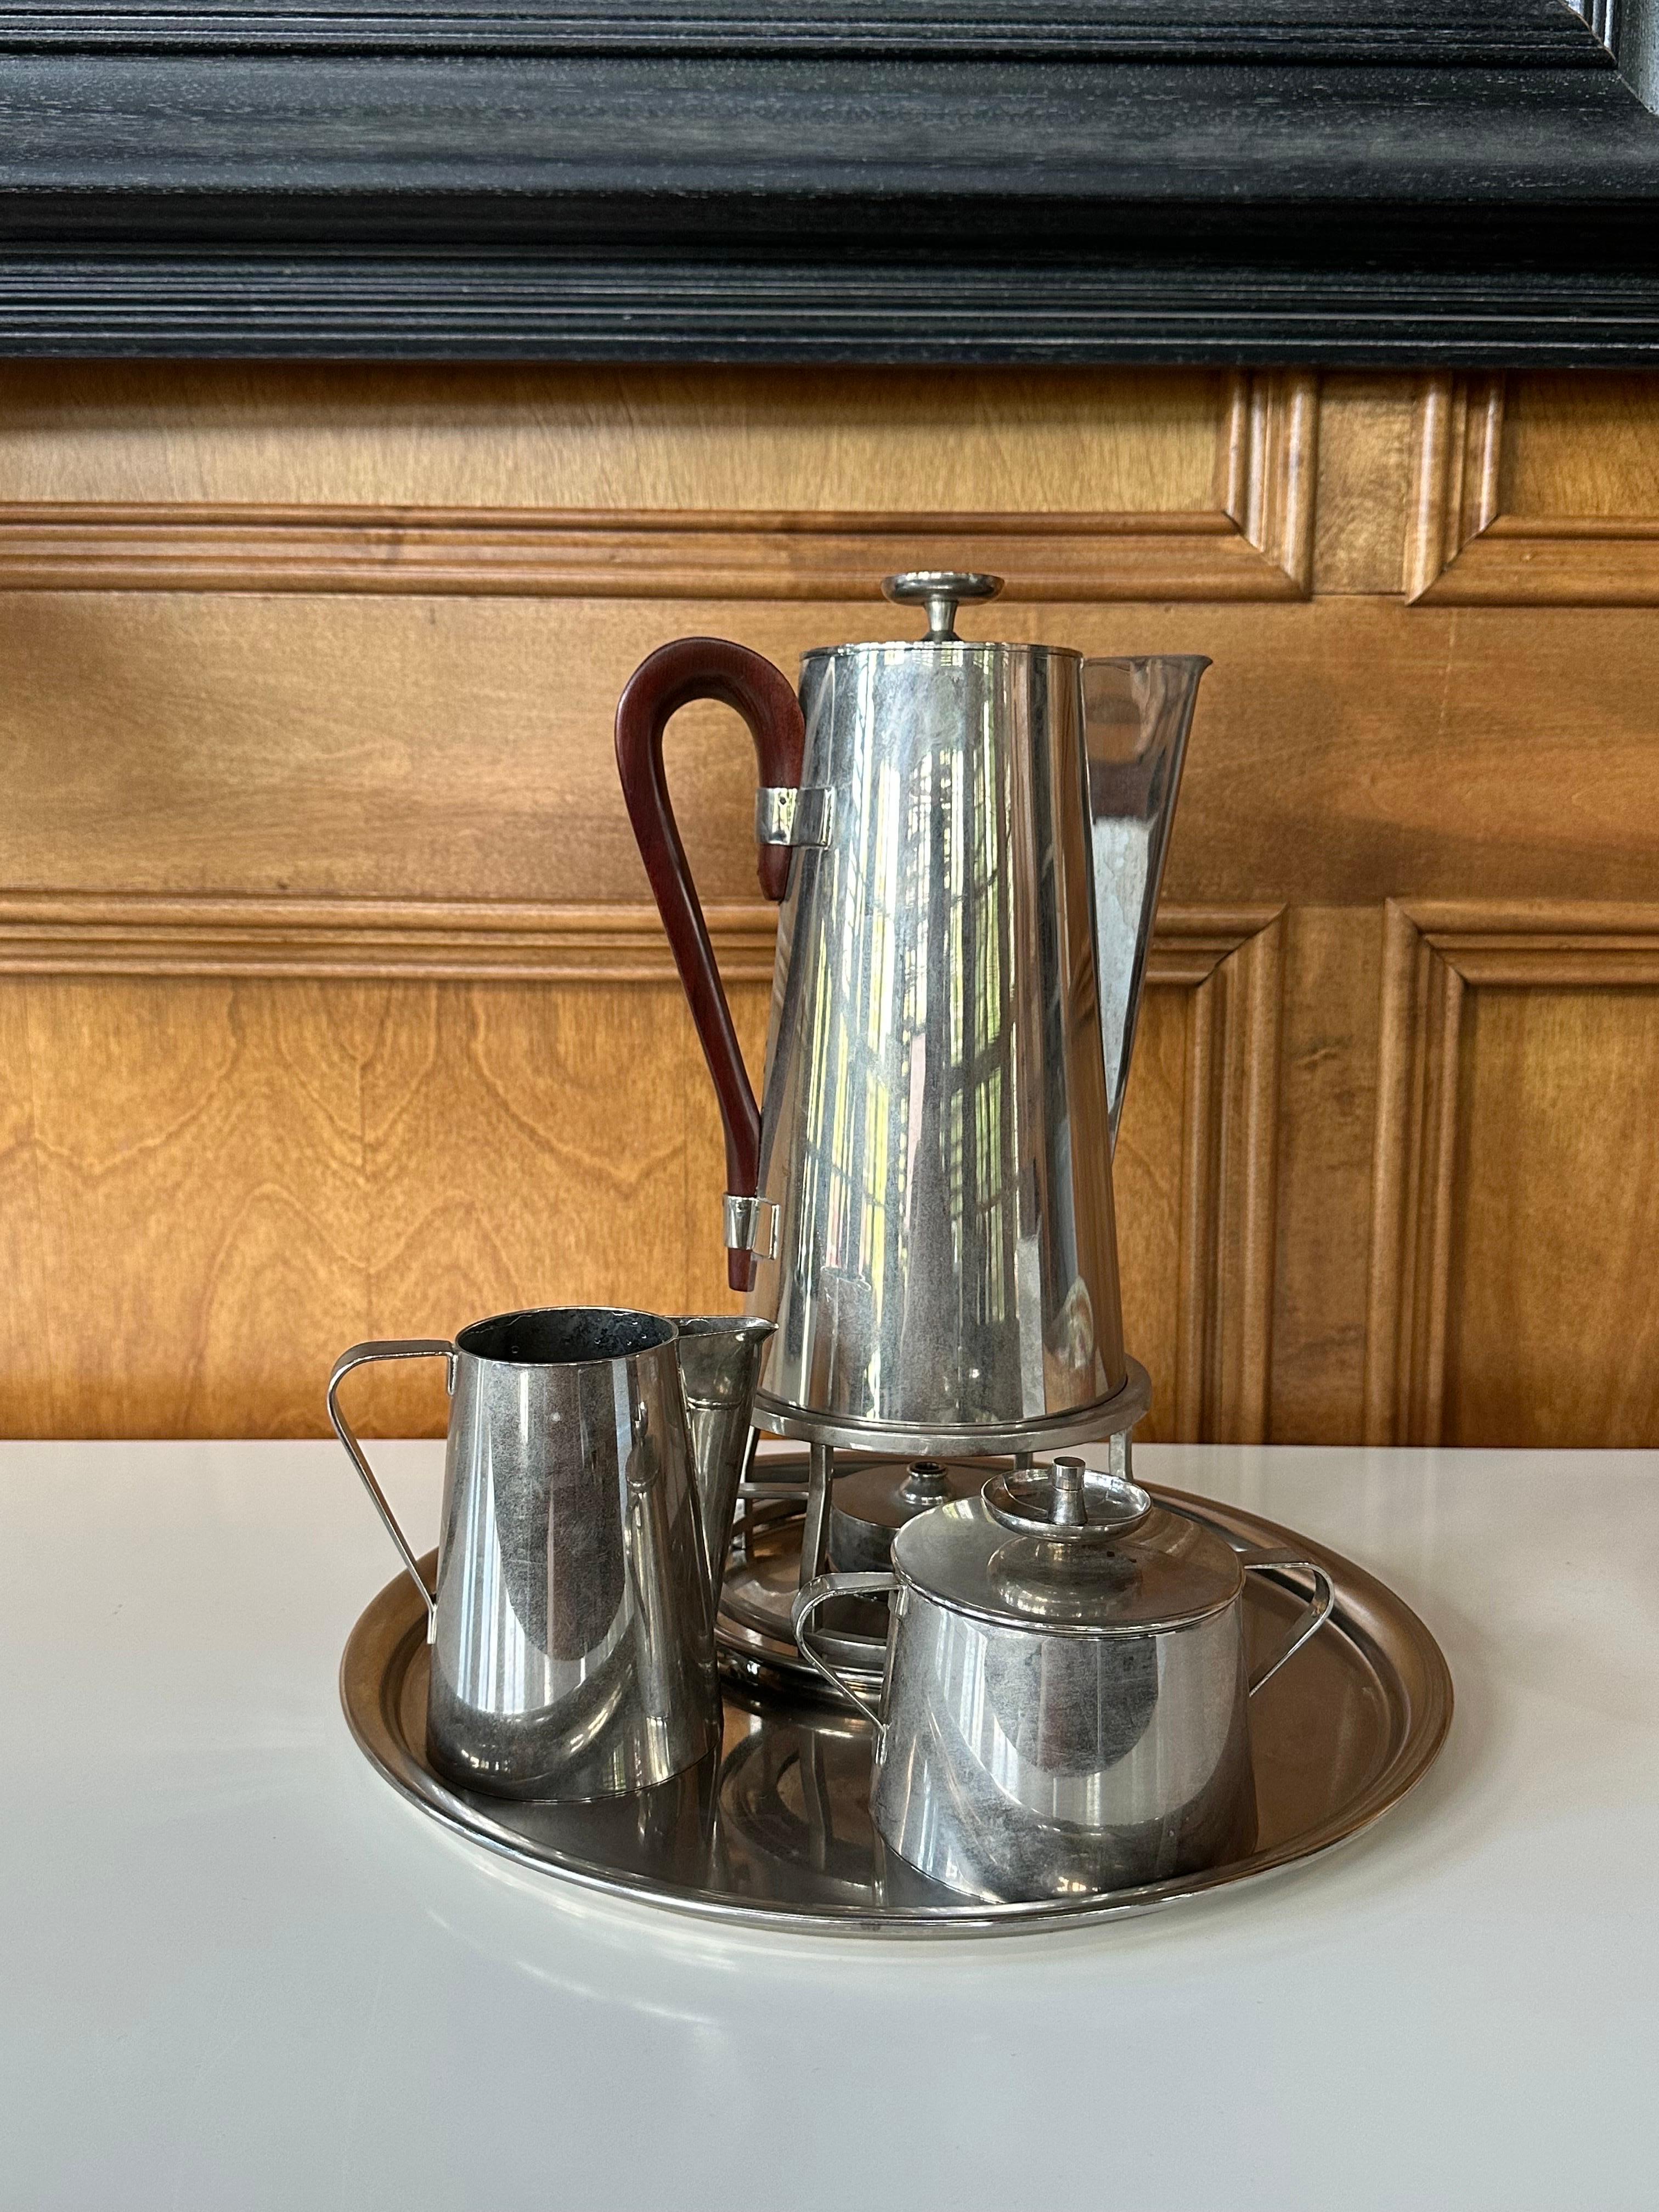 Ein Kaffee- oder Teeservice, entworfen von Tommi Parzinger für Dorlyn Silversmith. Das Set ist aus schwerem Messing gefertigt und neu vernickelt. Es besteht aus einem Krug mit Holzgriff, der mit einem Heizer ausgestattet ist, einem Milchkännchen,